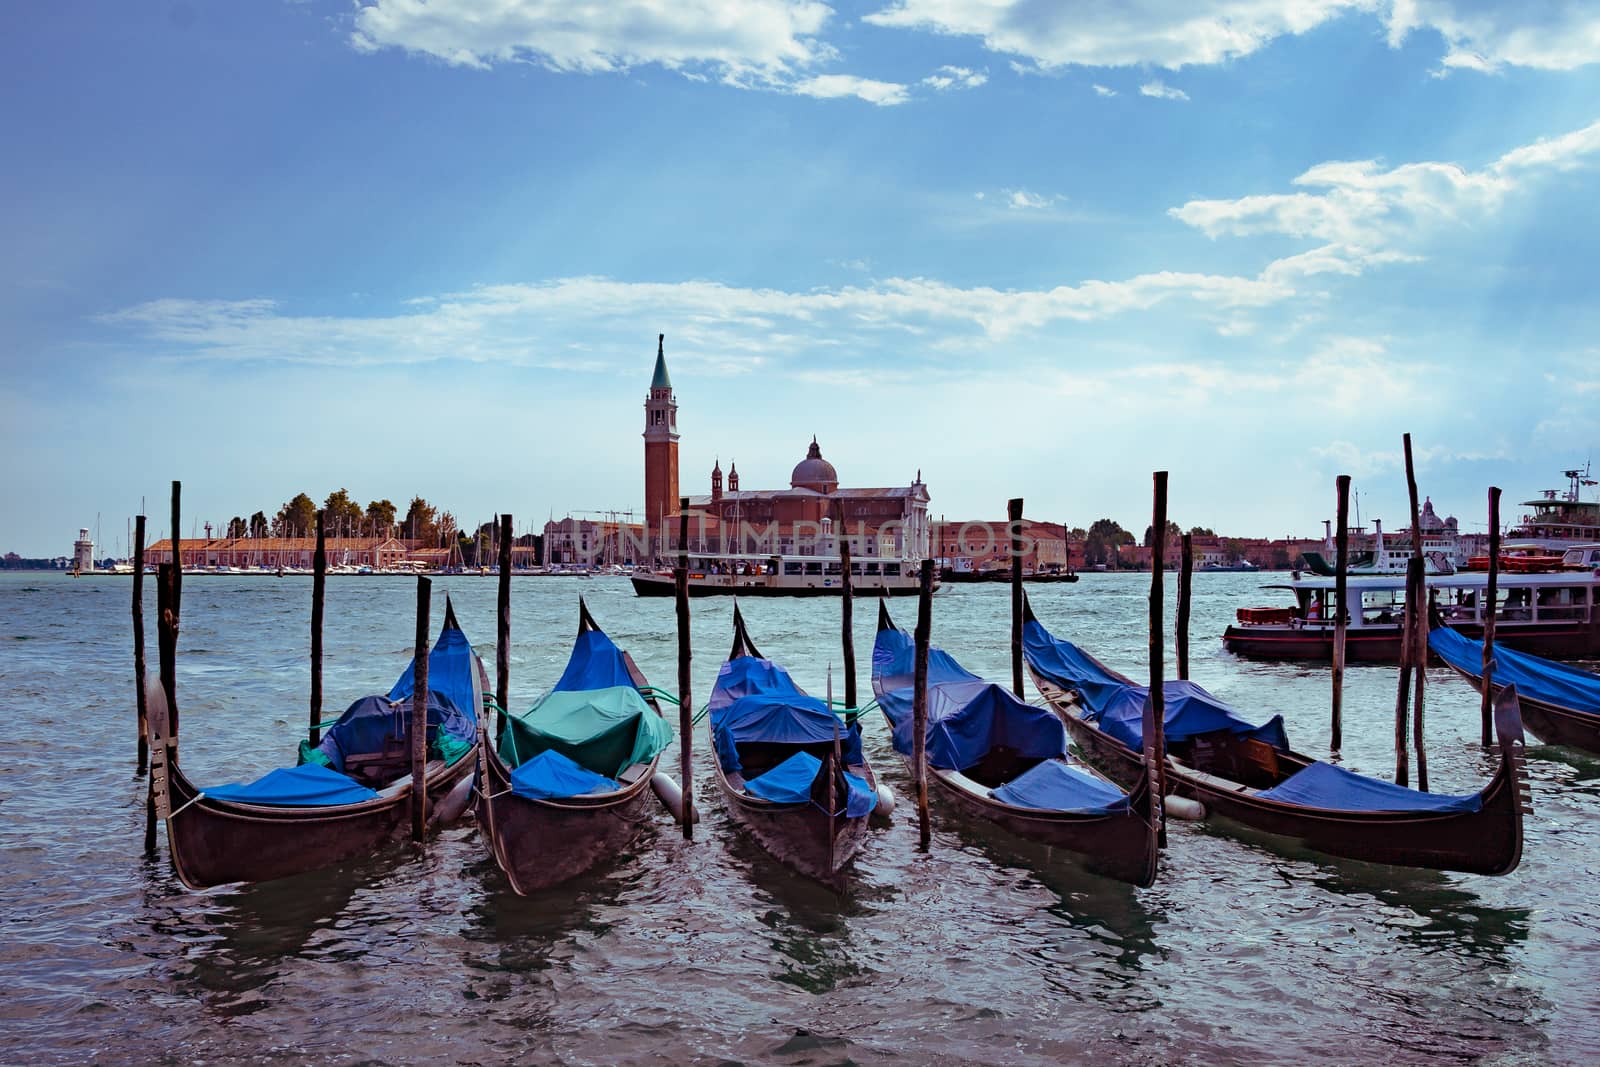 Gondolas in Venice with San Giorgio Maggiore church on the background by tanaonte